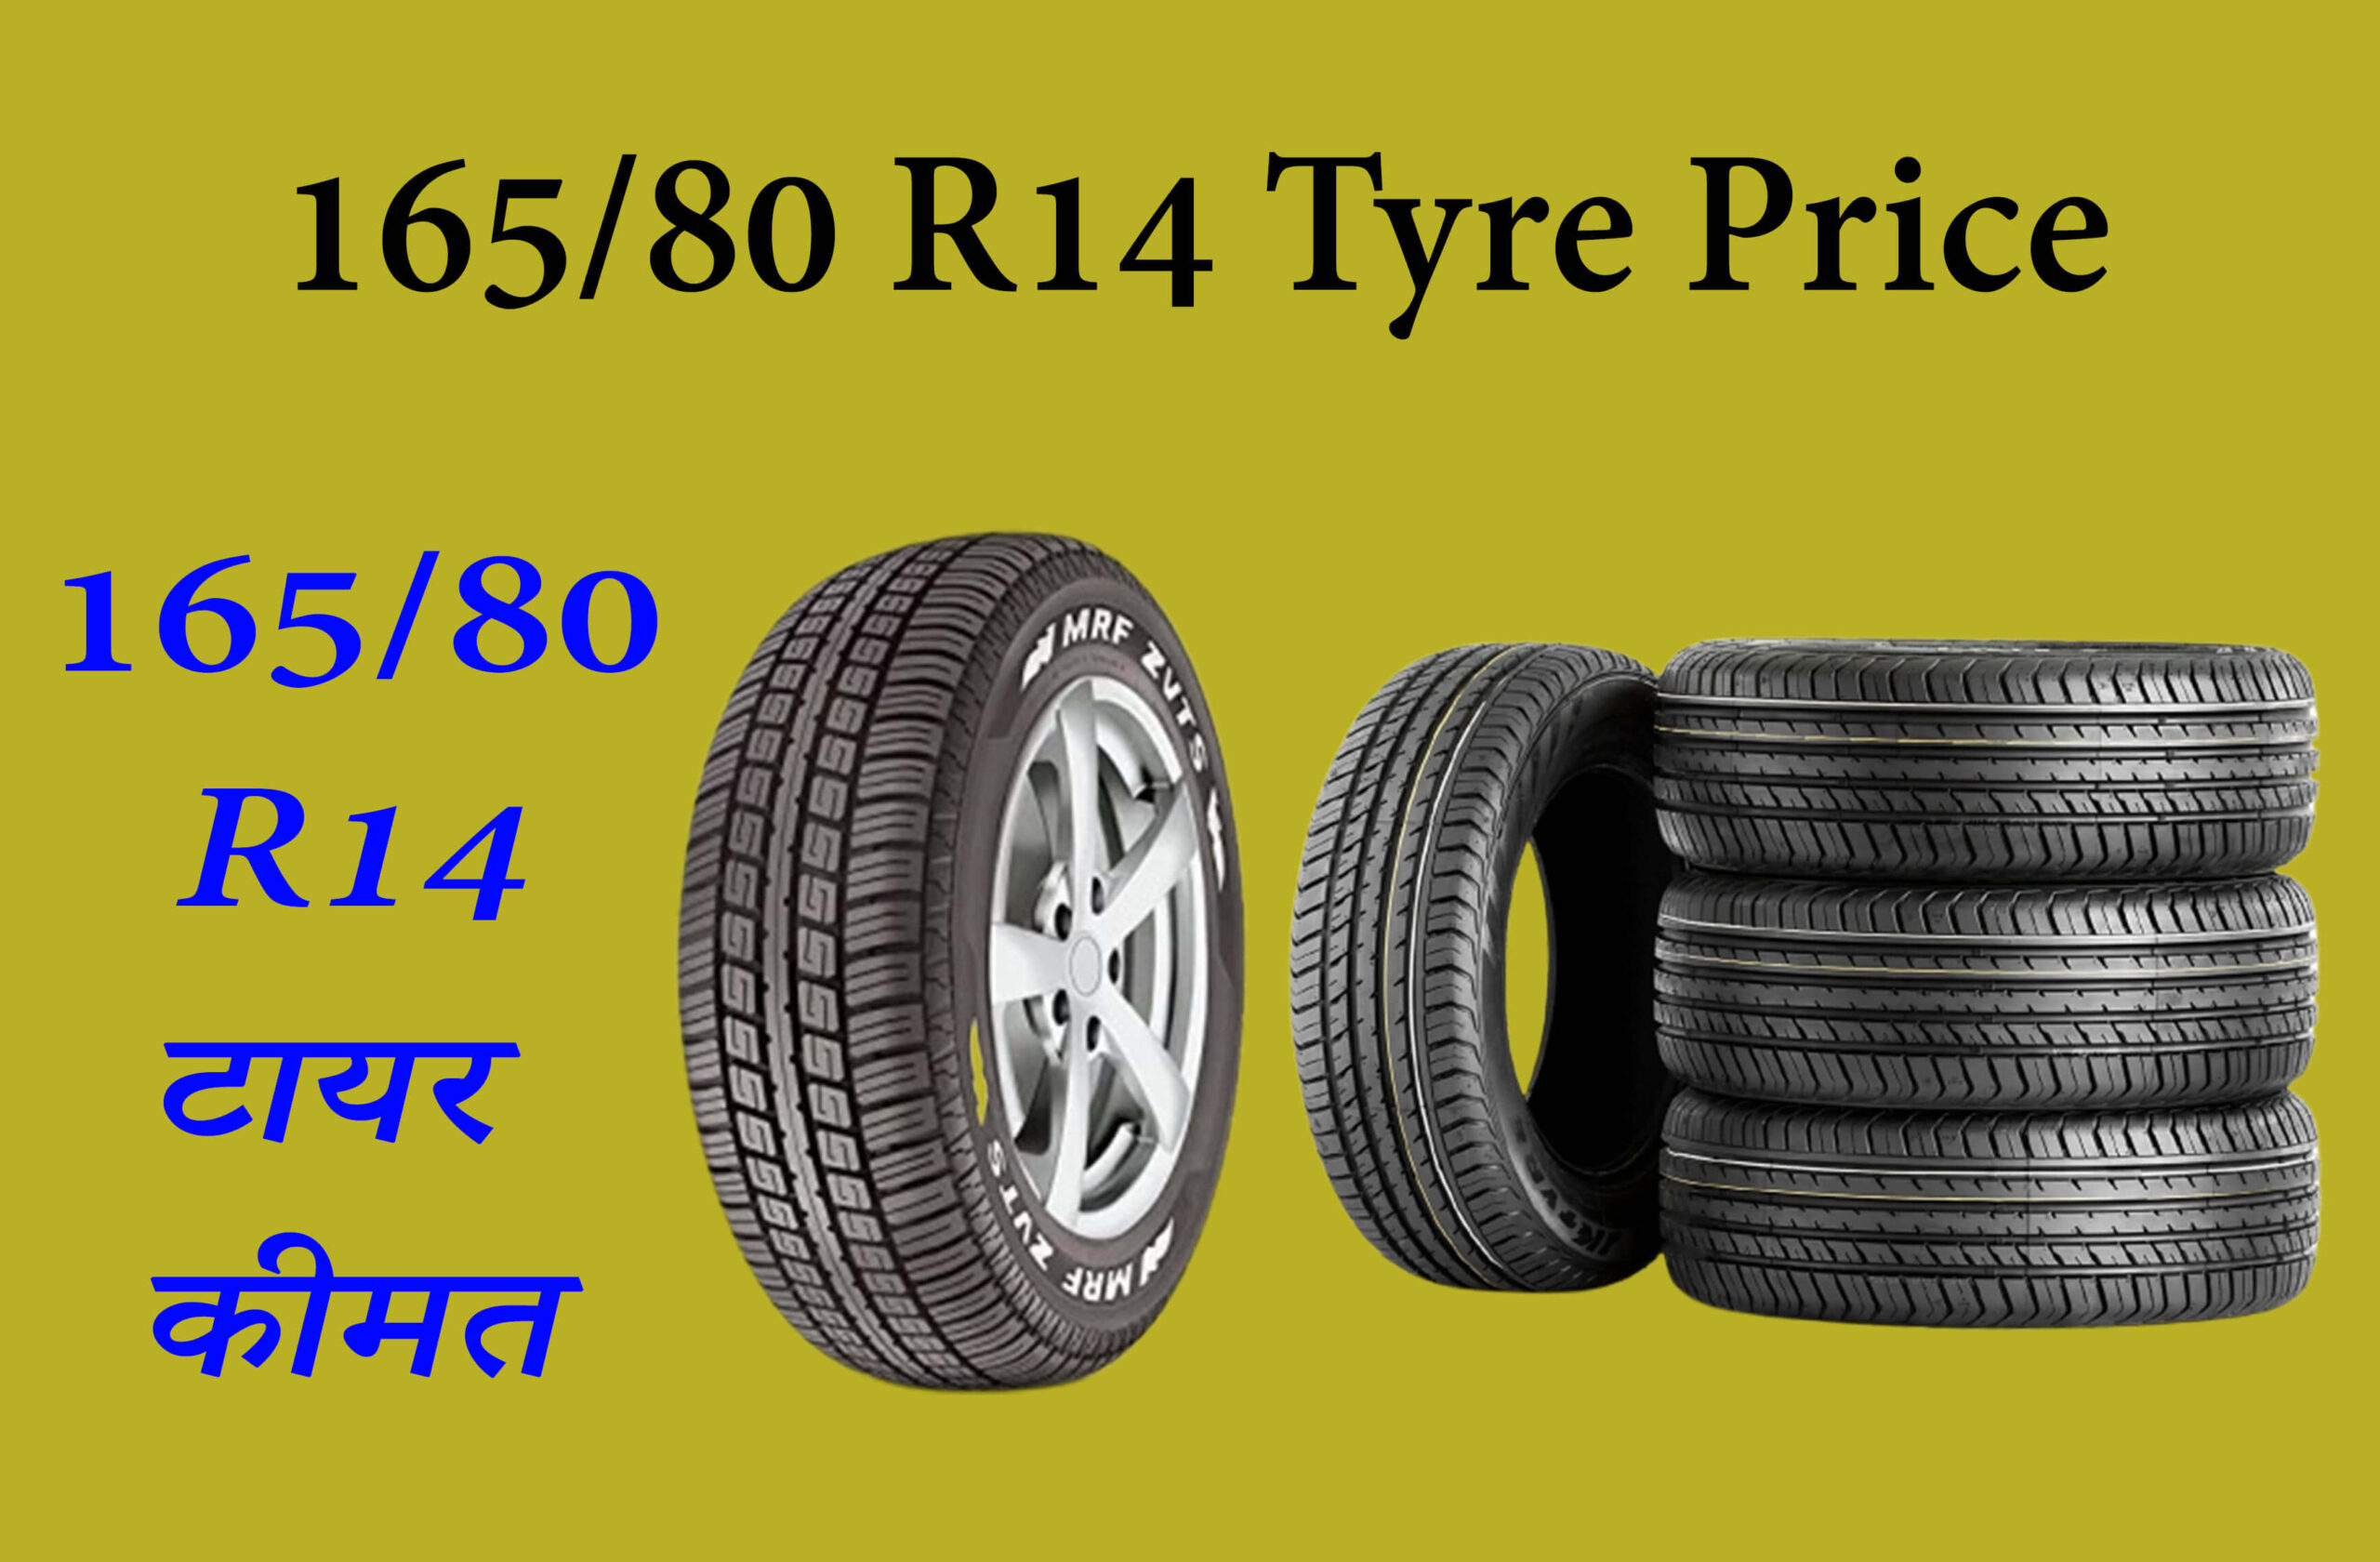 16580 R14 Tyre Price